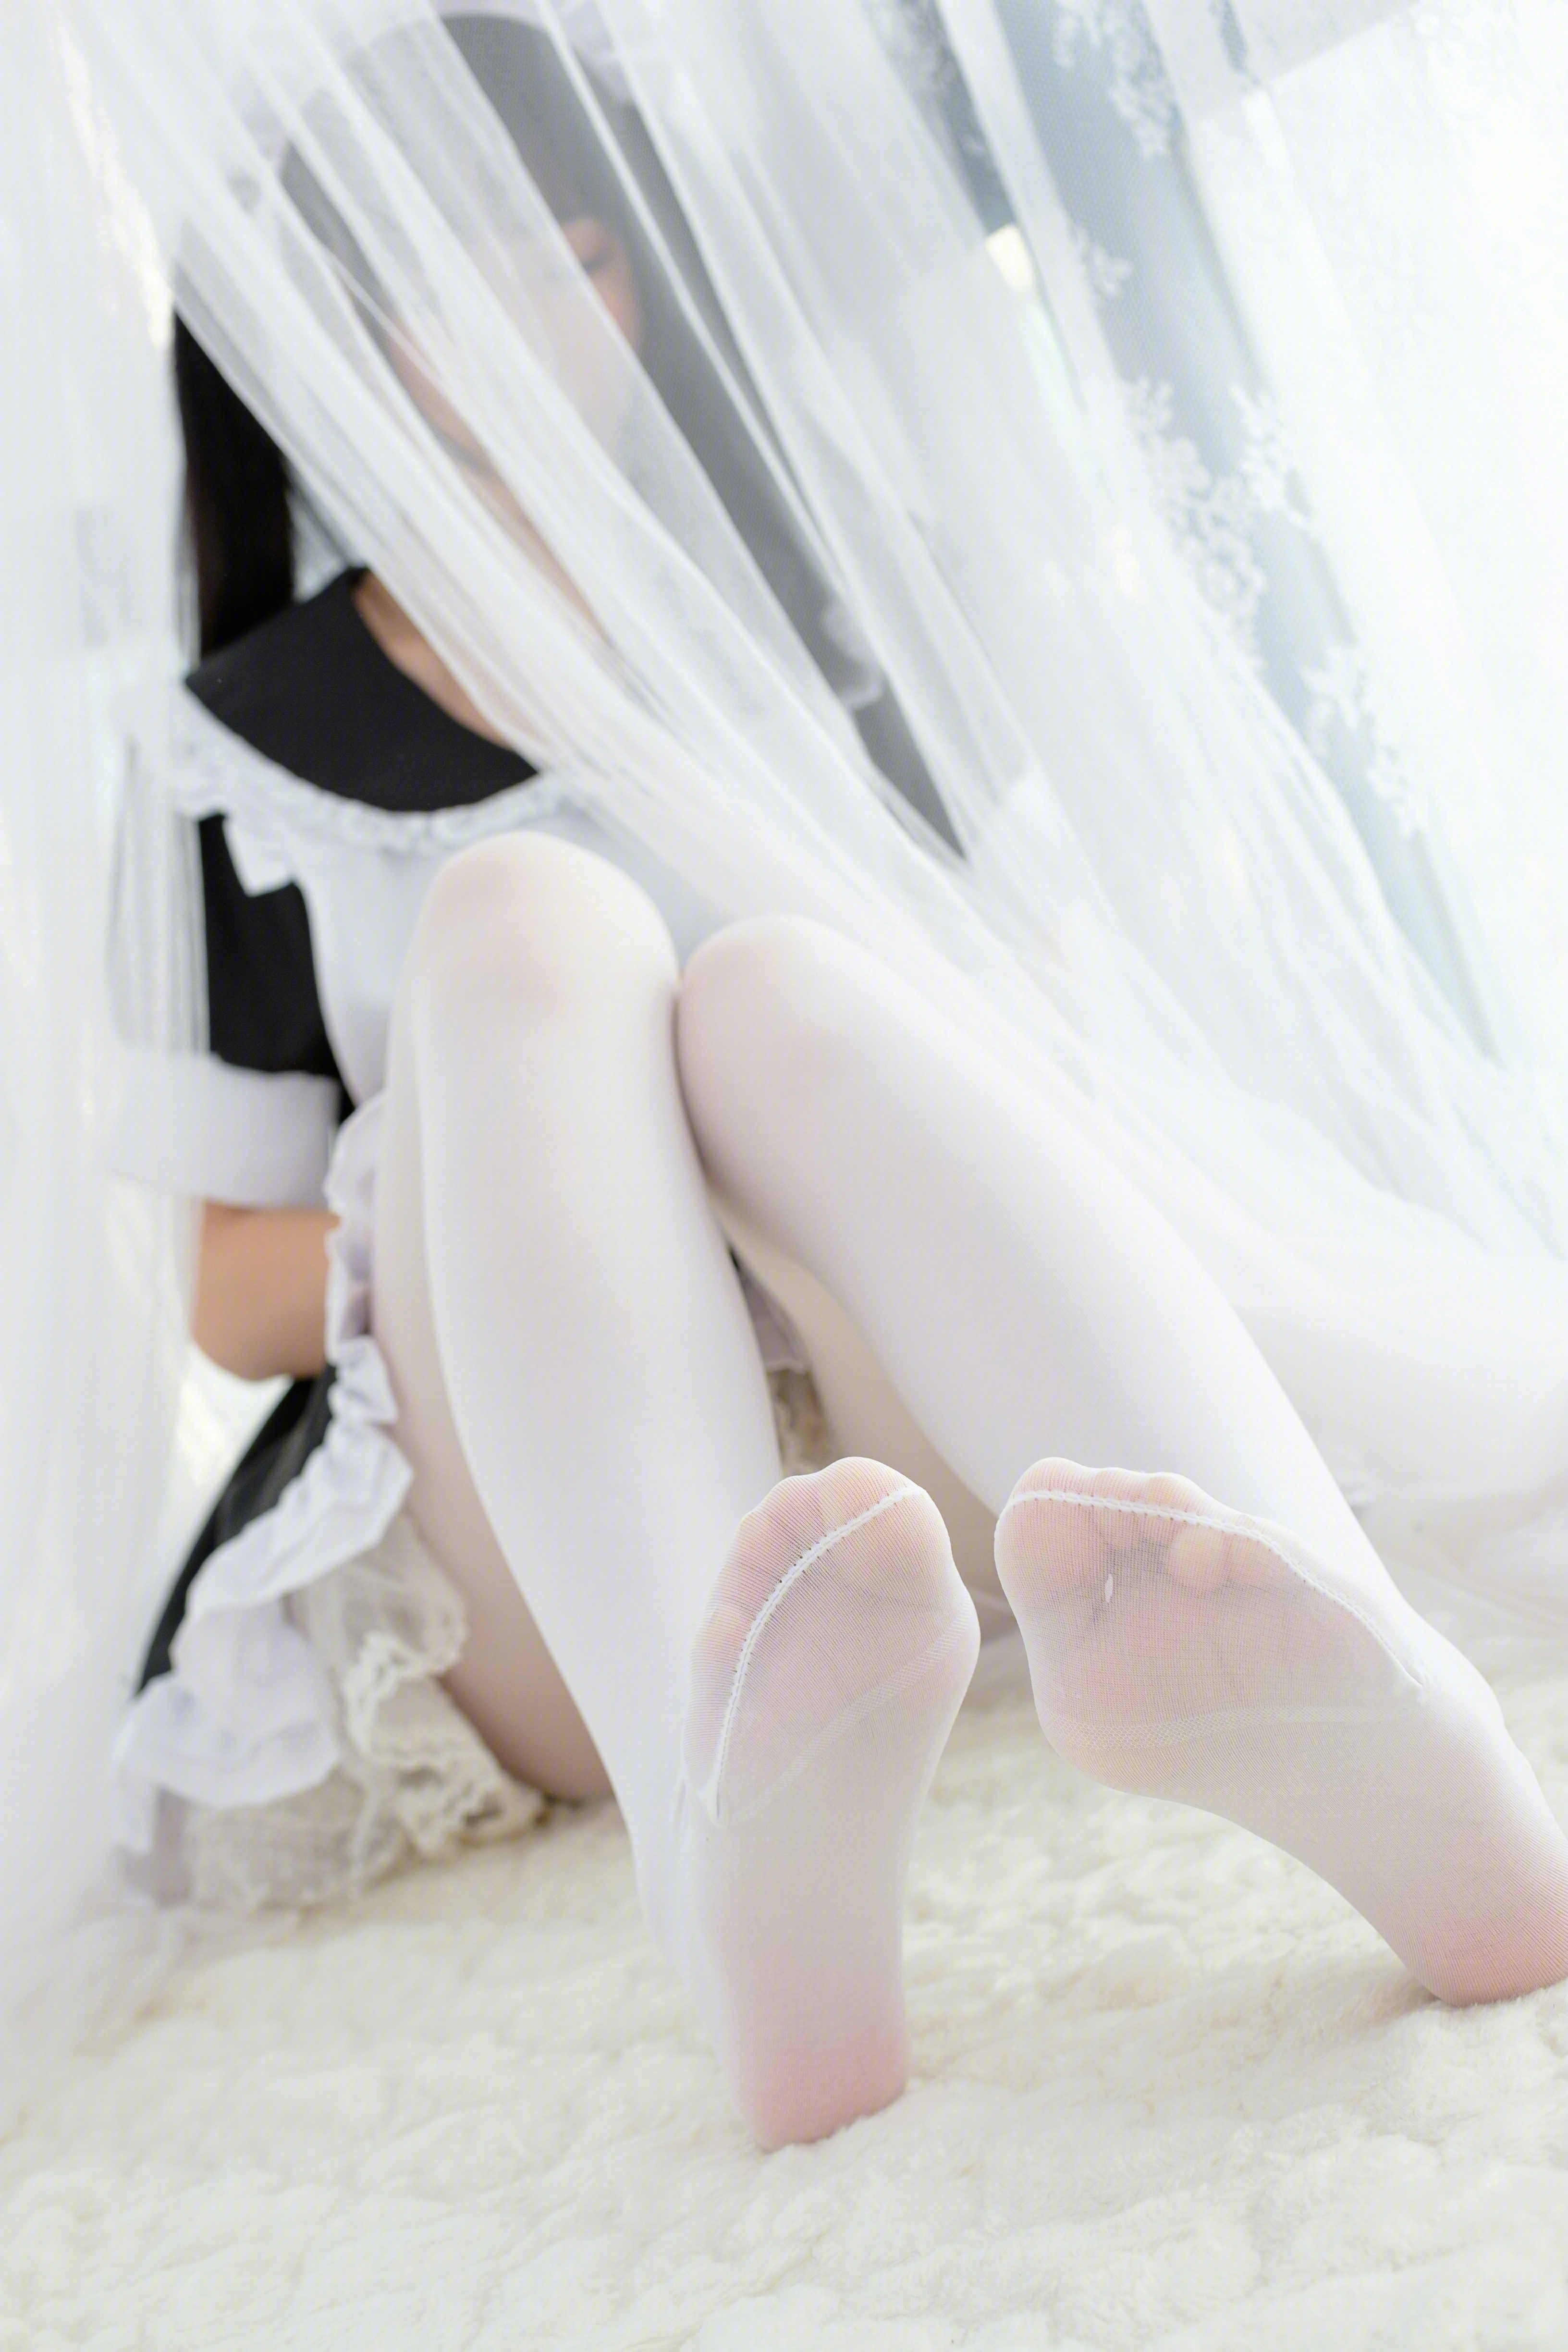 [森萝财团]SSR-007 女仆的白丝 性感女仆萝莉 情趣制服加白色丝袜美腿玉足私房写真集,